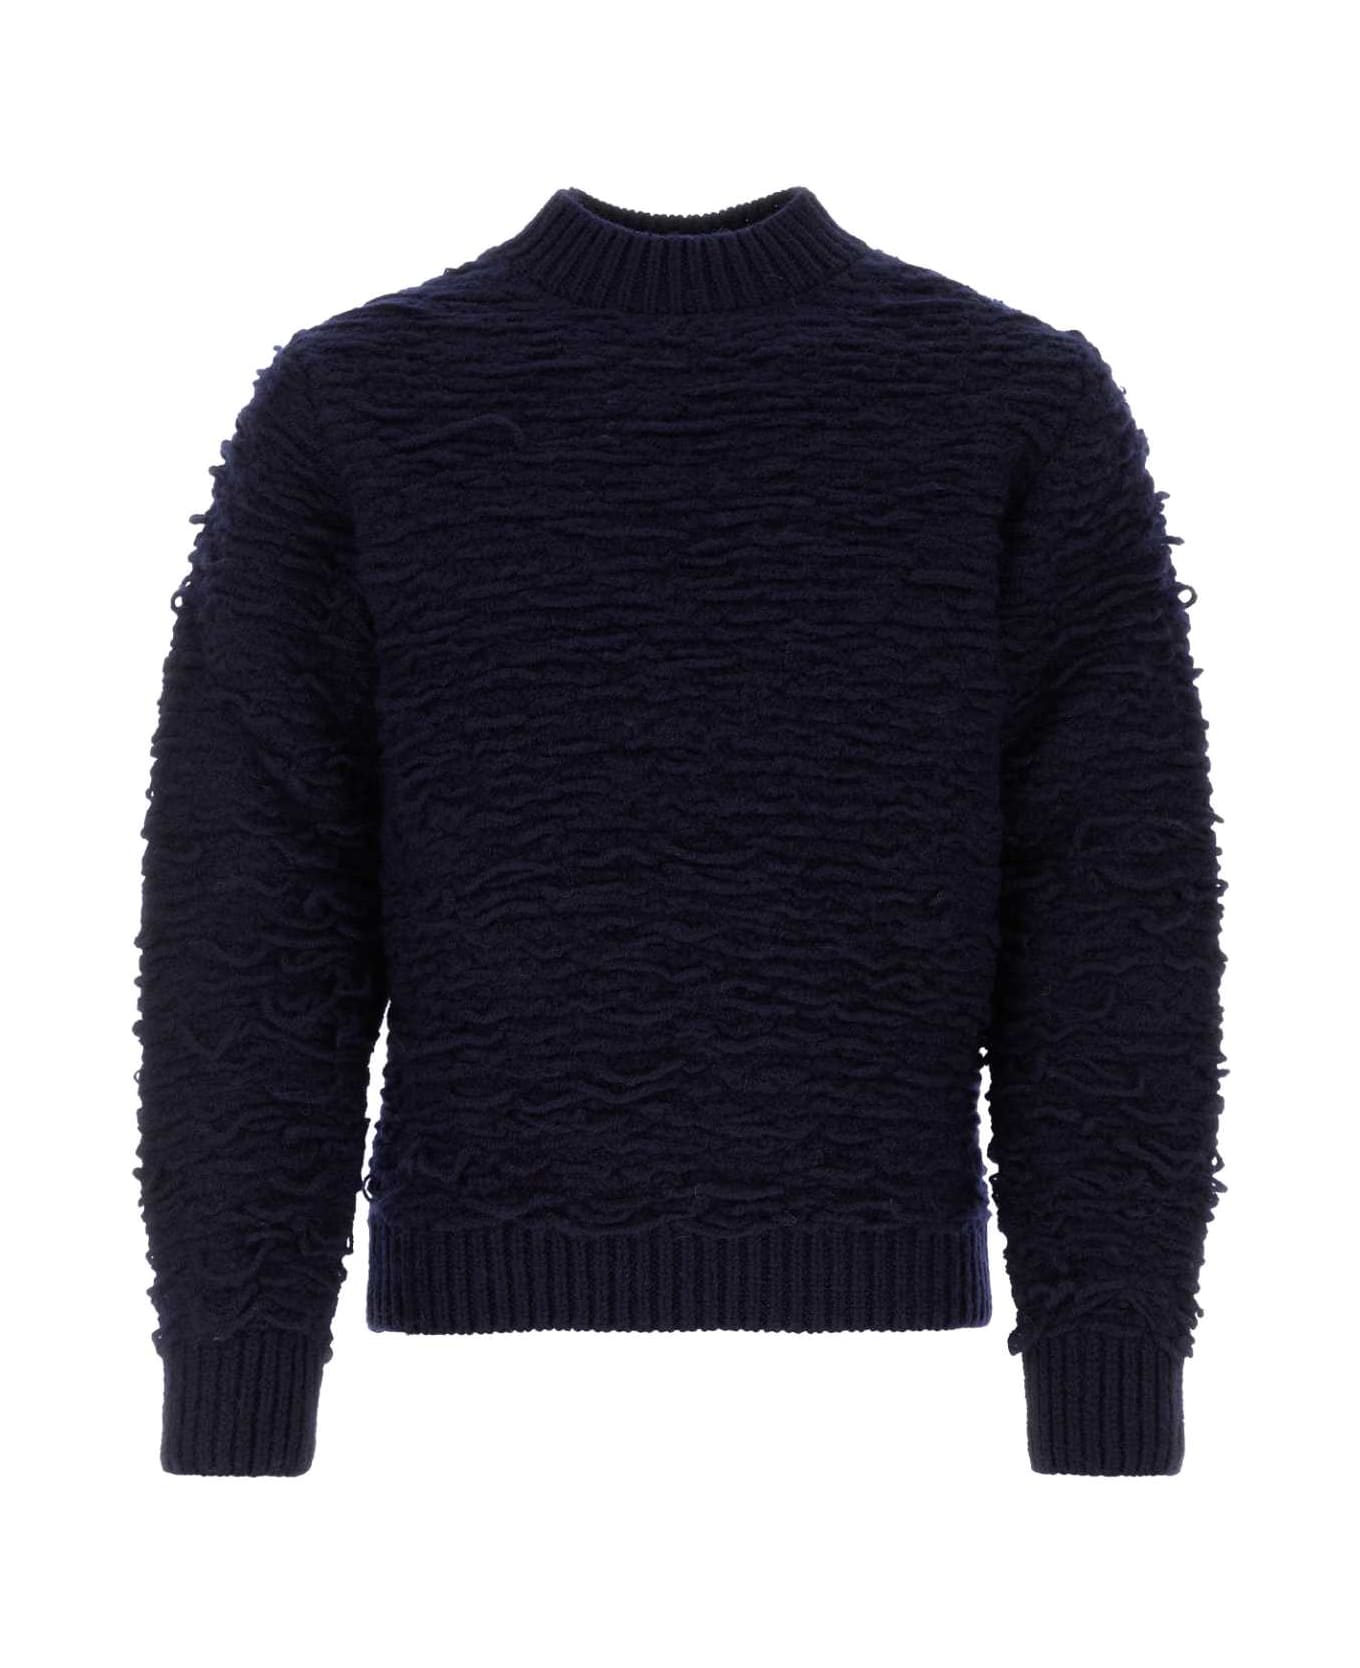 Dries Van Noten Navy Blue Wool Sweater - NAVY